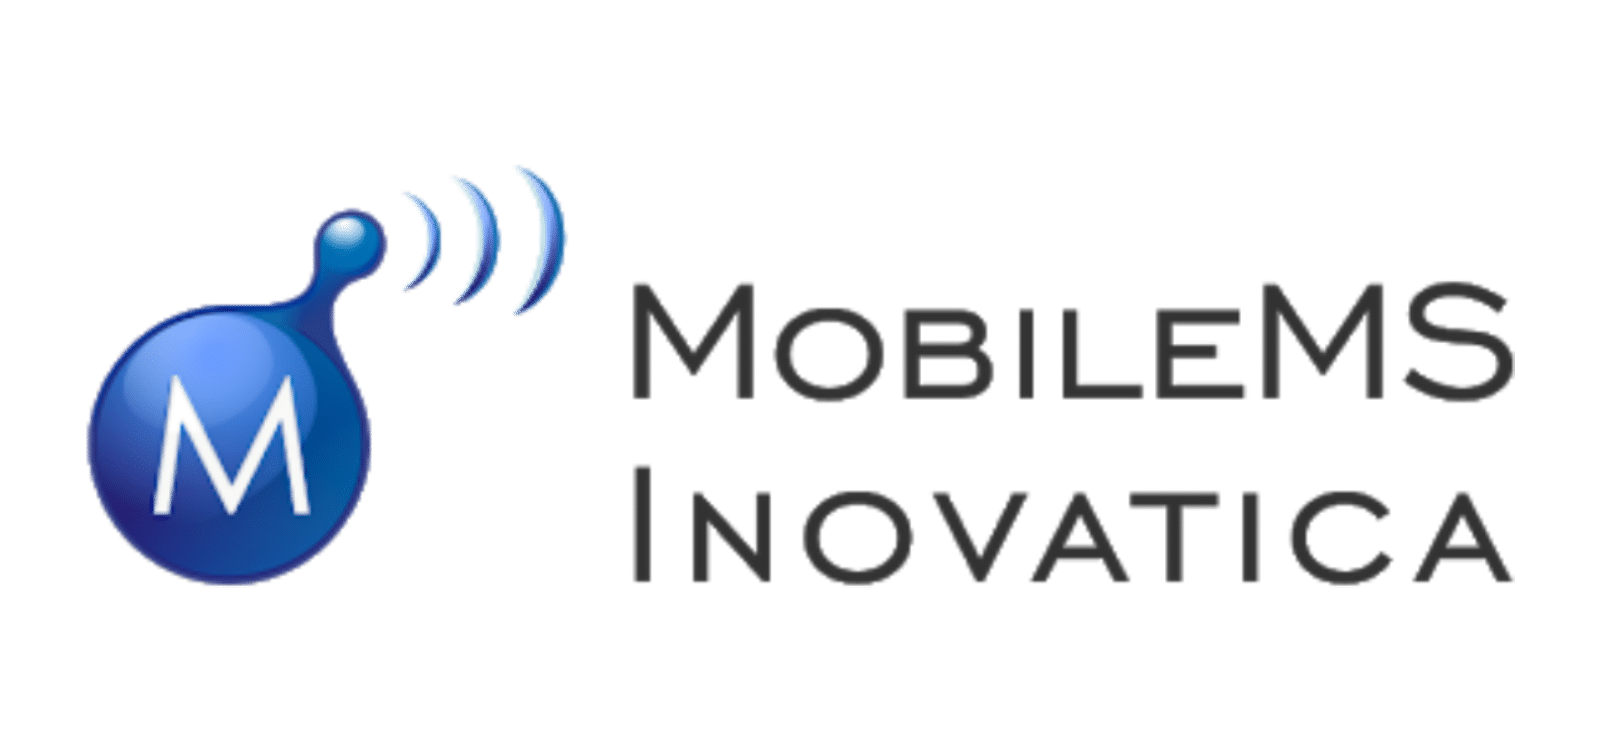 MobileMS Inovatica